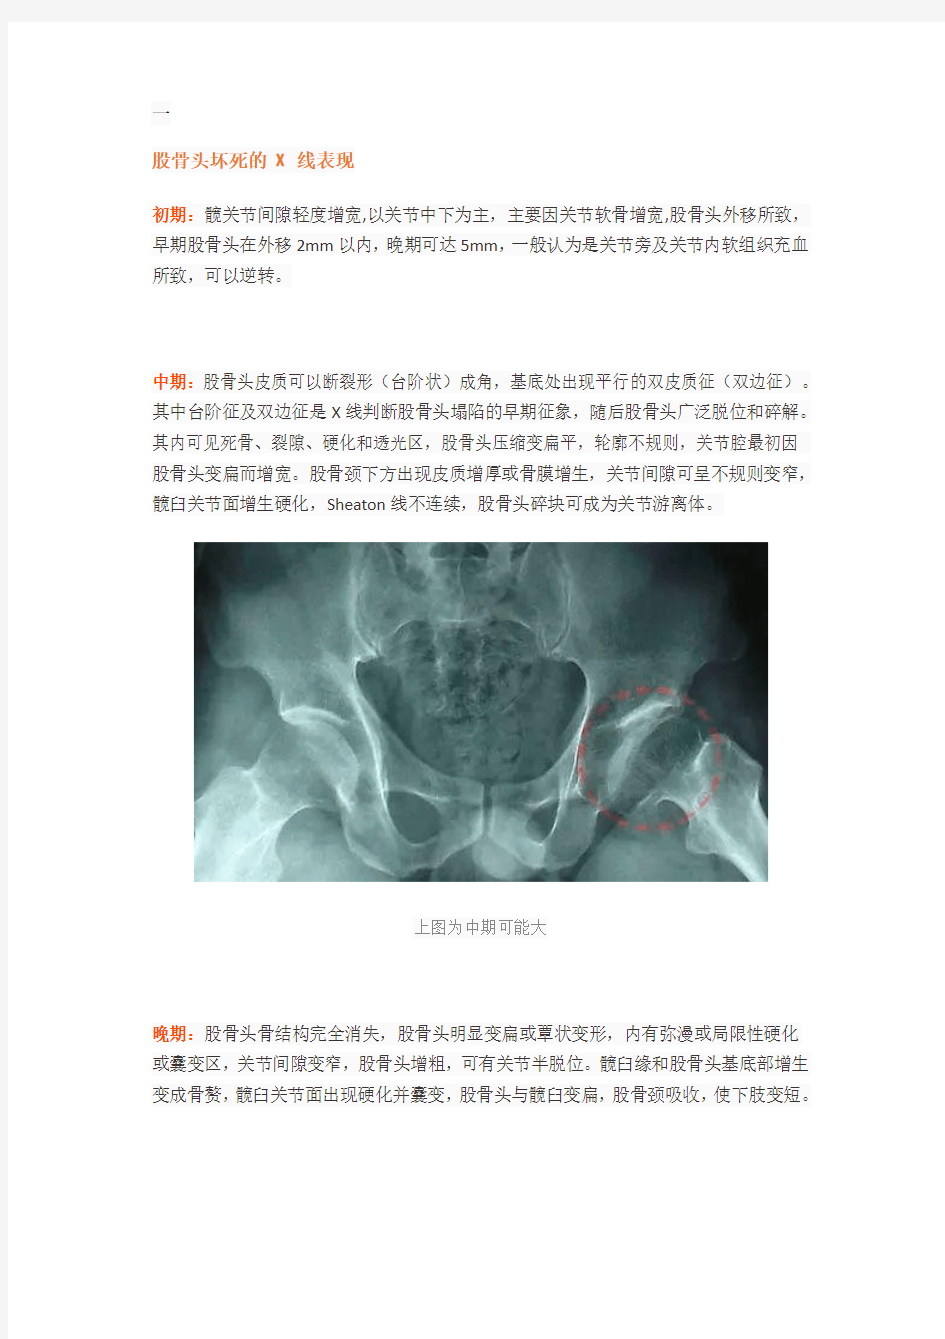 股骨头坏死的X、CT、MRI的影像诊断!